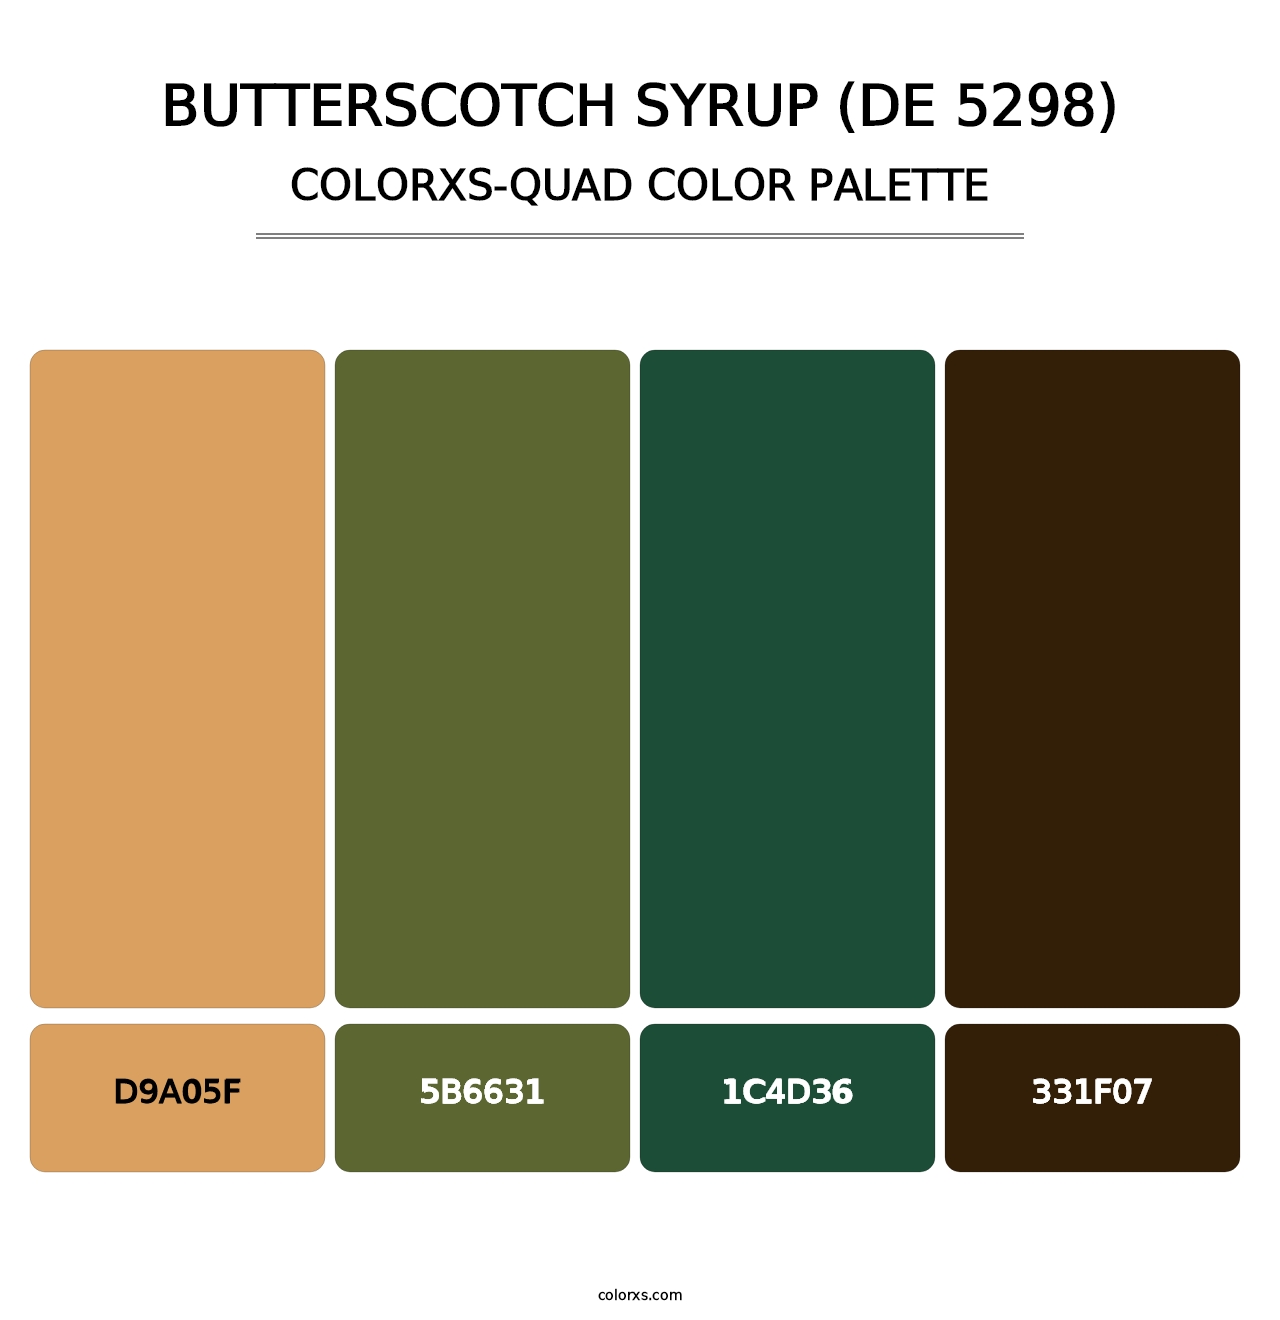 Butterscotch Syrup (DE 5298) - Colorxs Quad Palette